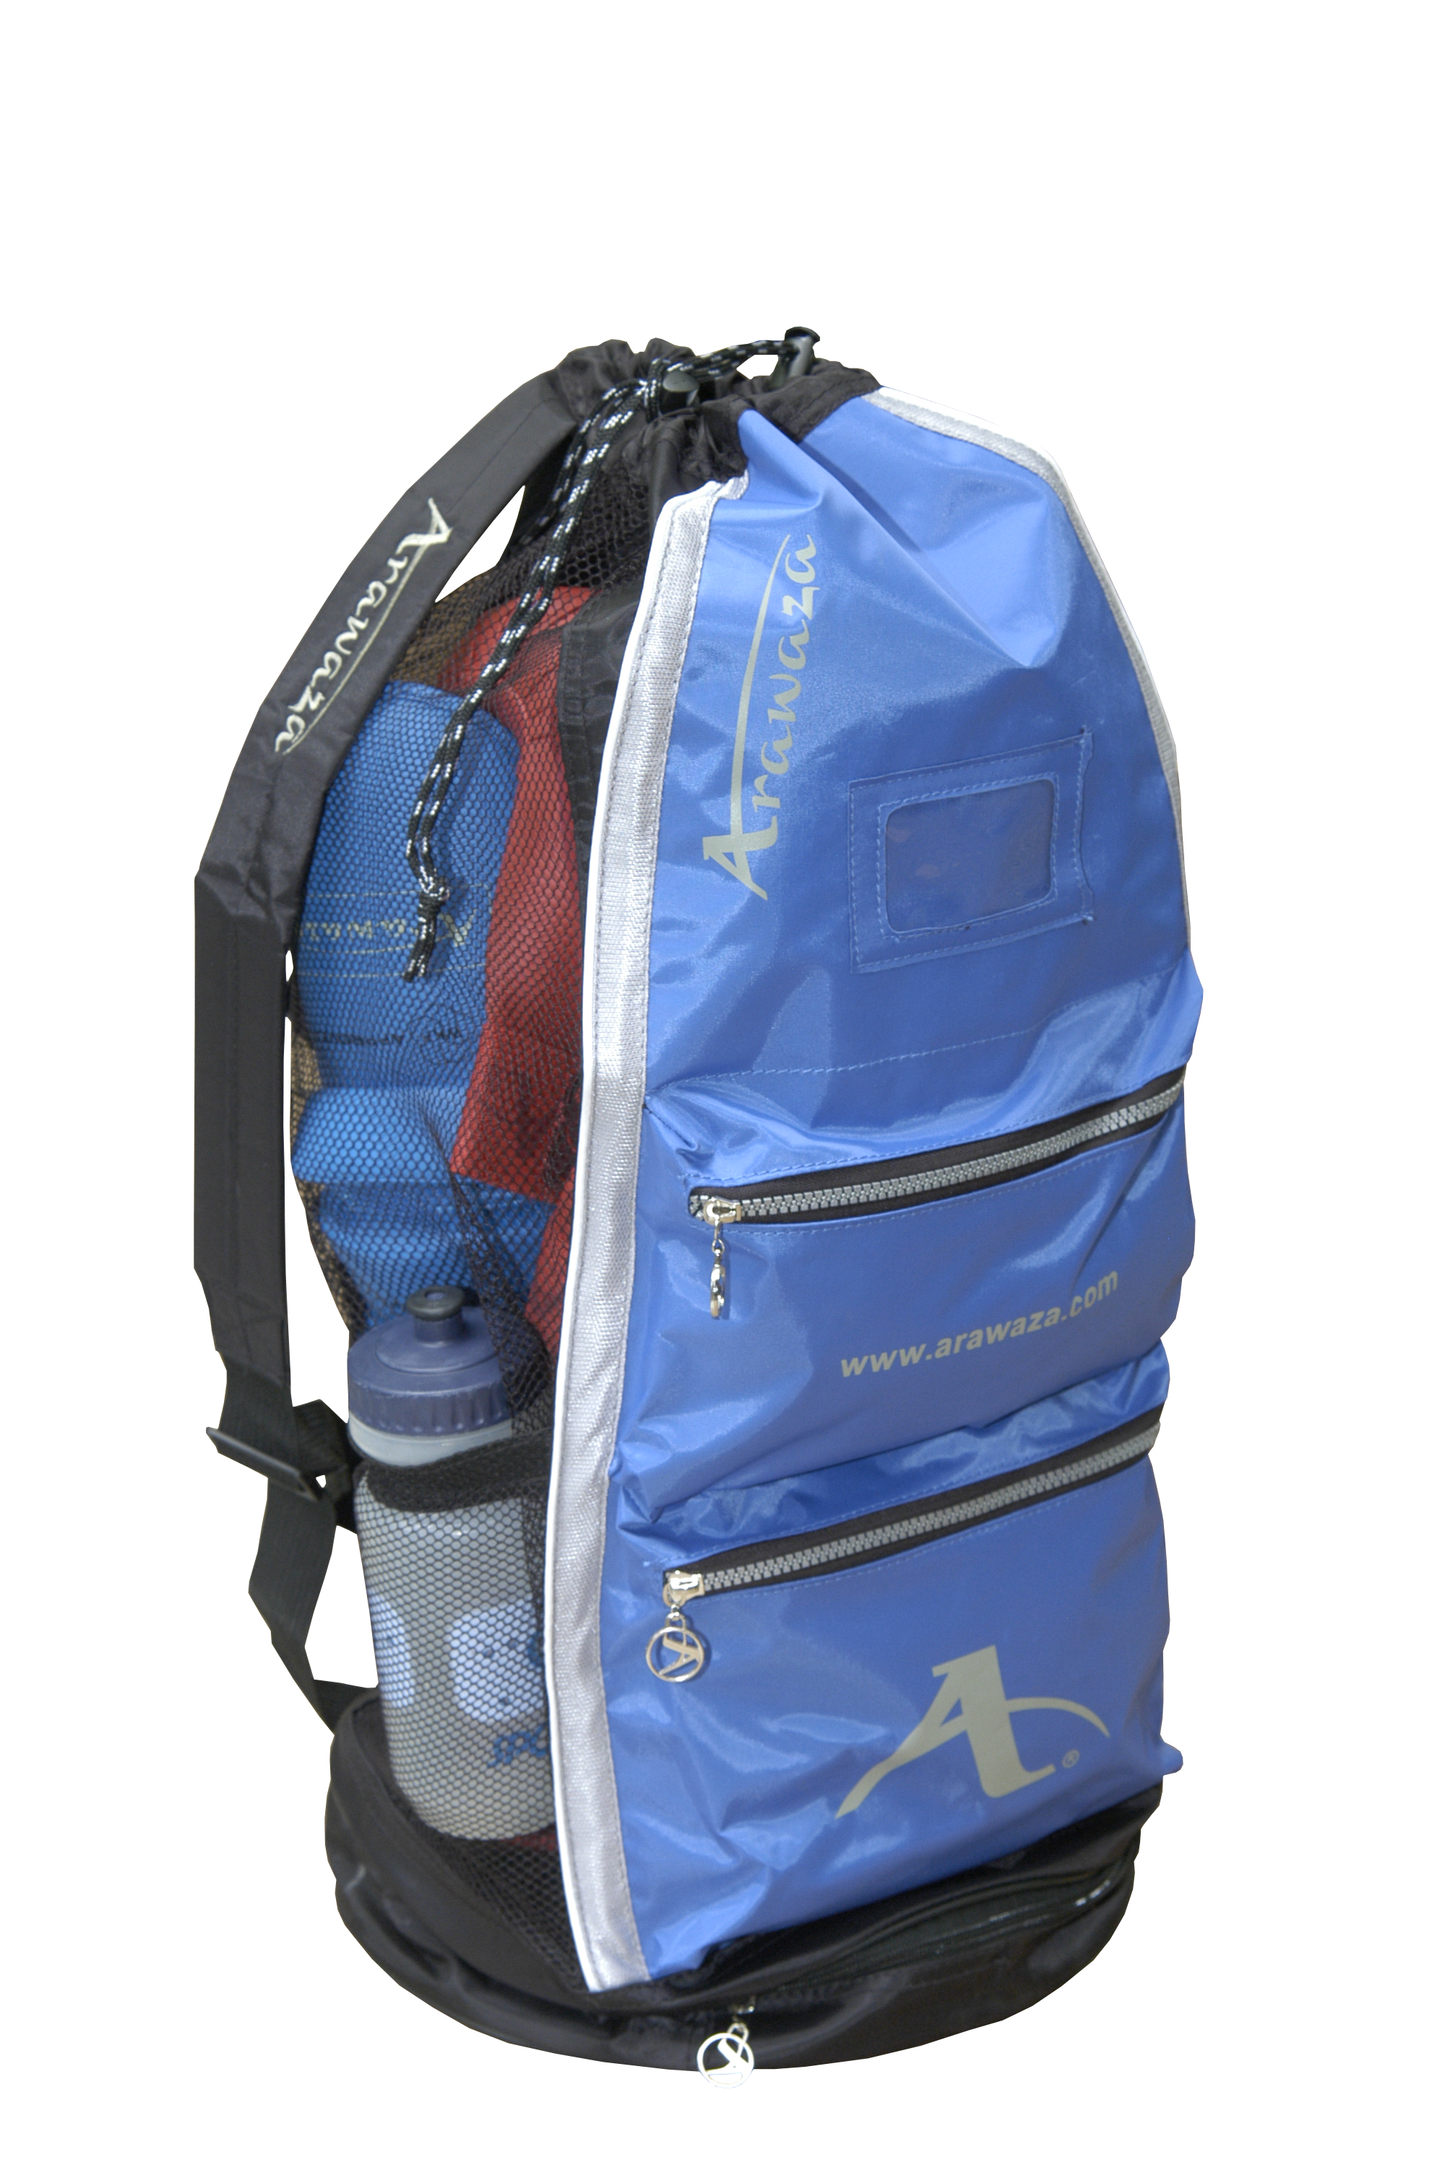 Arawaza Gear Bag - AVA SPORTS LTD